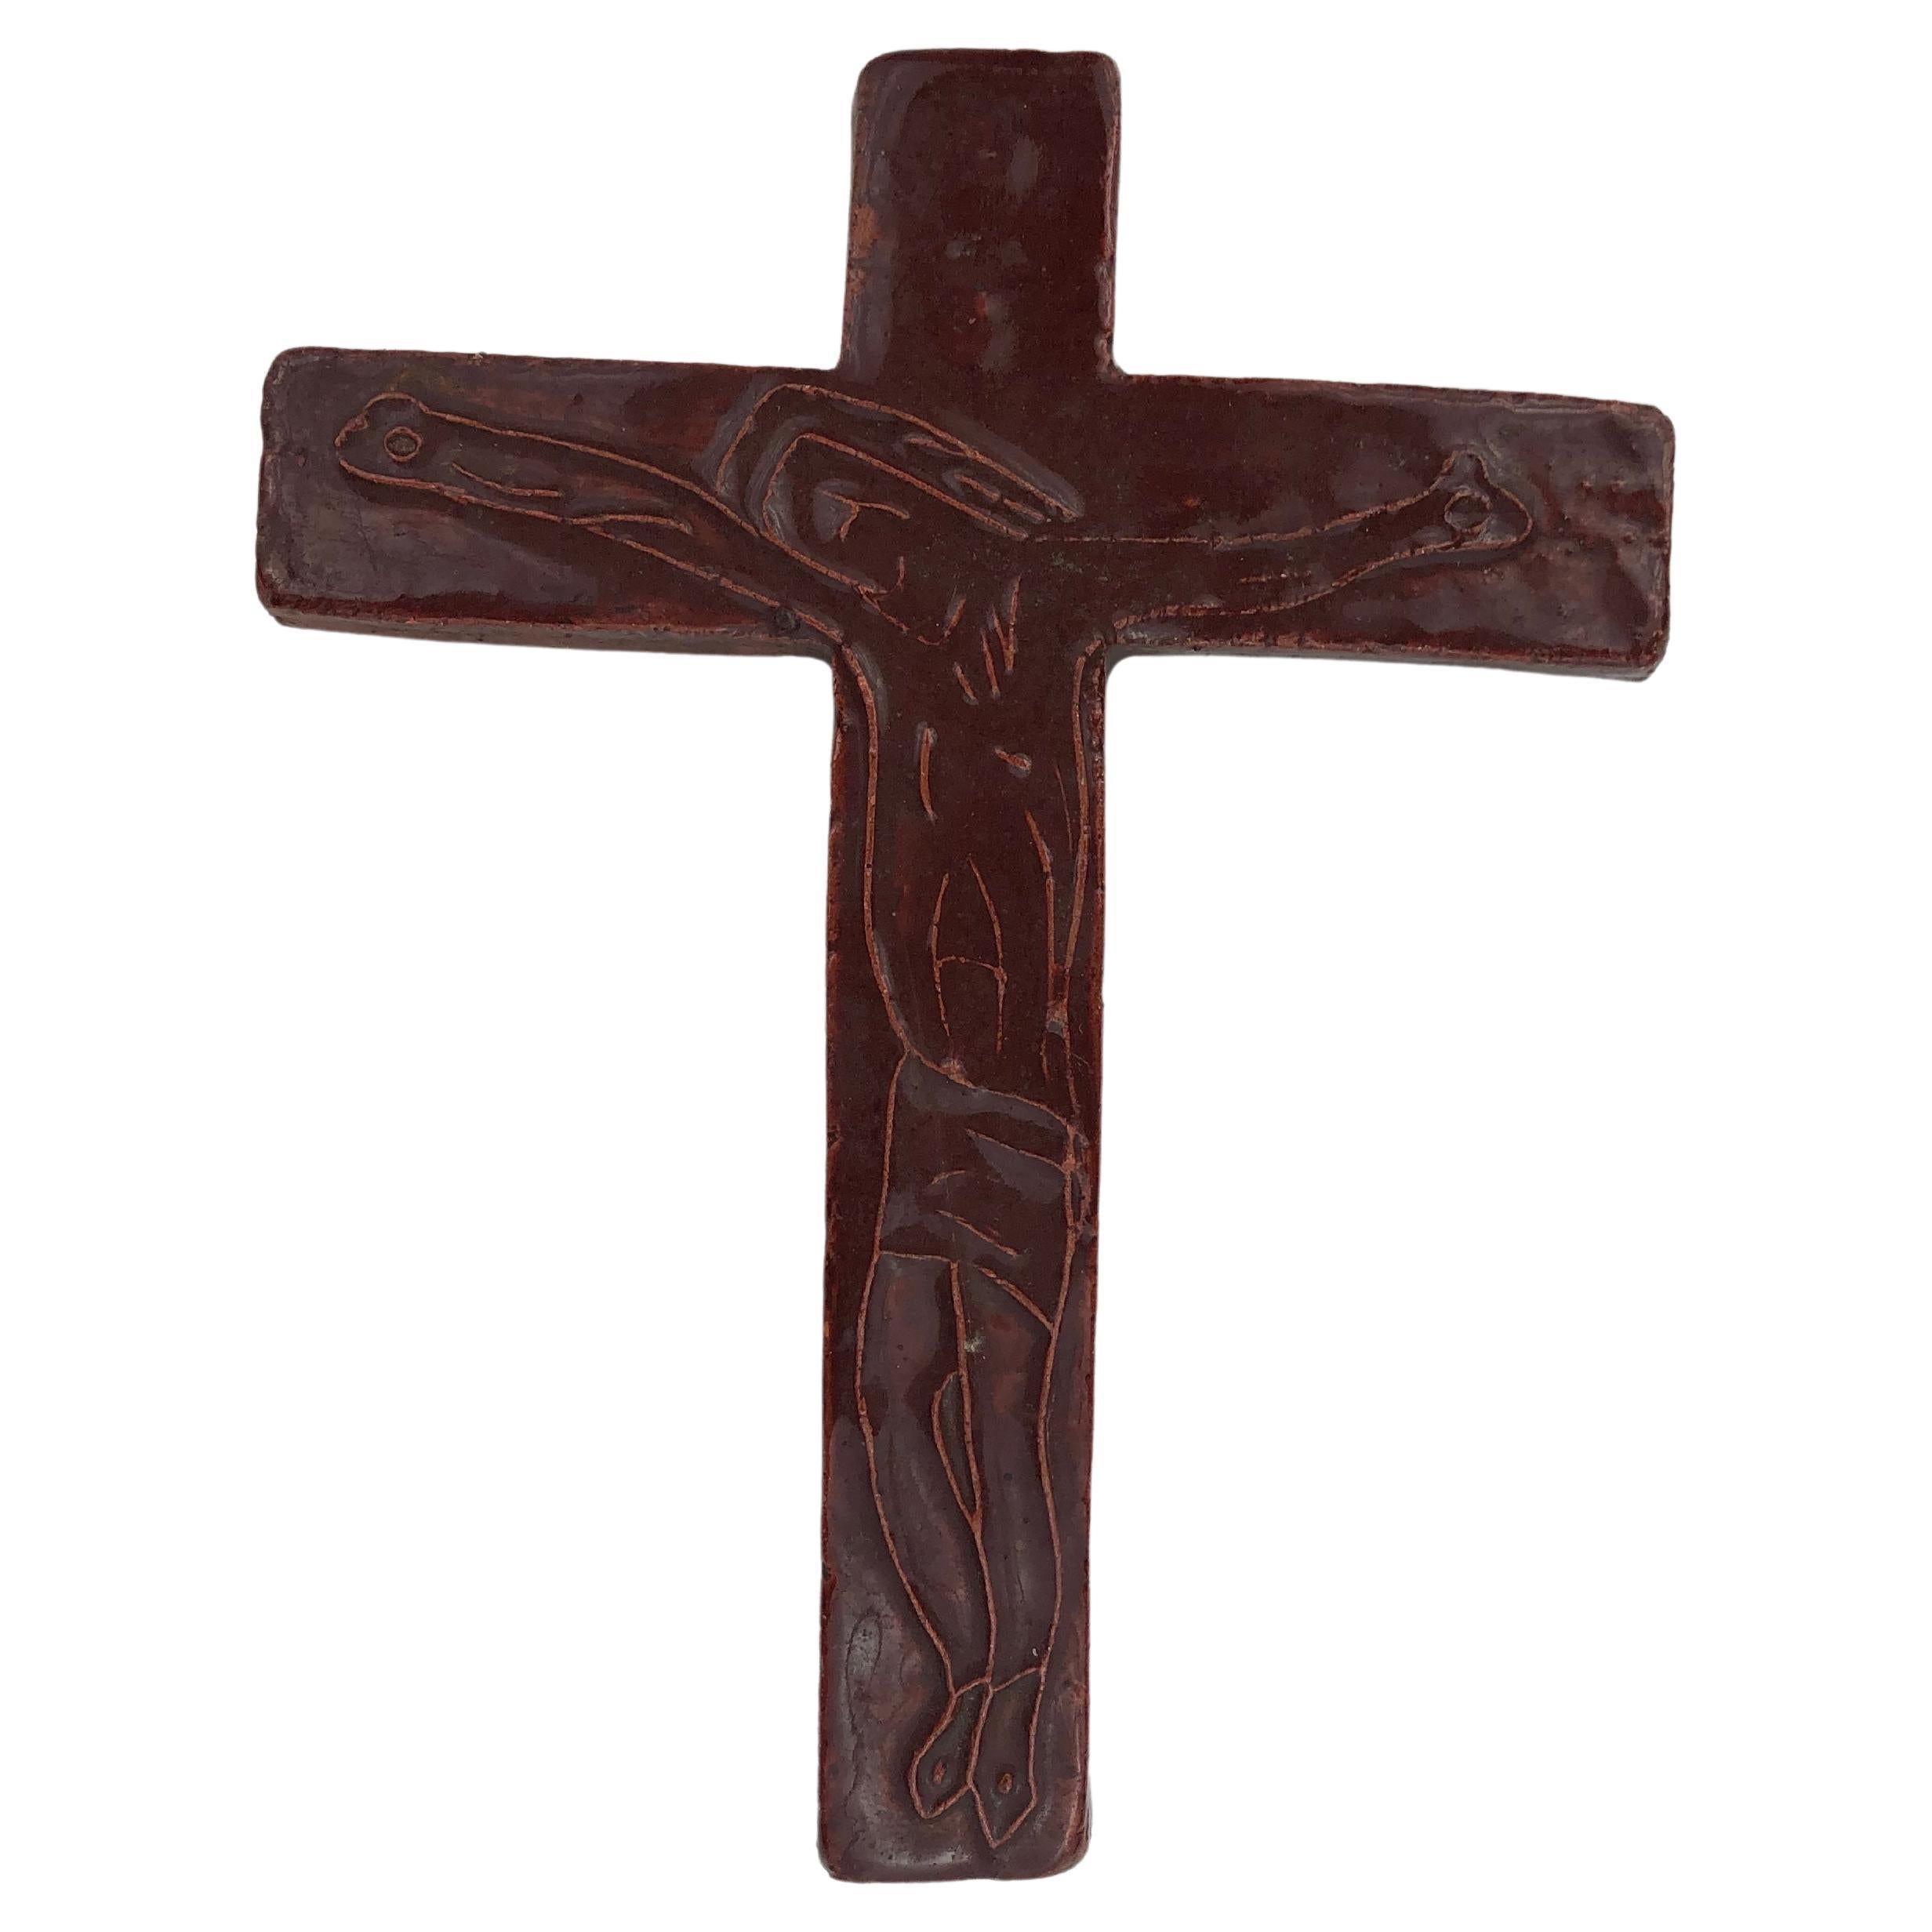 Dieses mit viel Liebe zum Detail handgefertigte europäische Keramikkreuz aus der Jahrhundertmitte hat einen satten rotbraunen Glanz. In der Mitte ist eine abstrakte Strichzeichnung einer Christusfigur in Relief eingraviert. 

Das Kernelement des